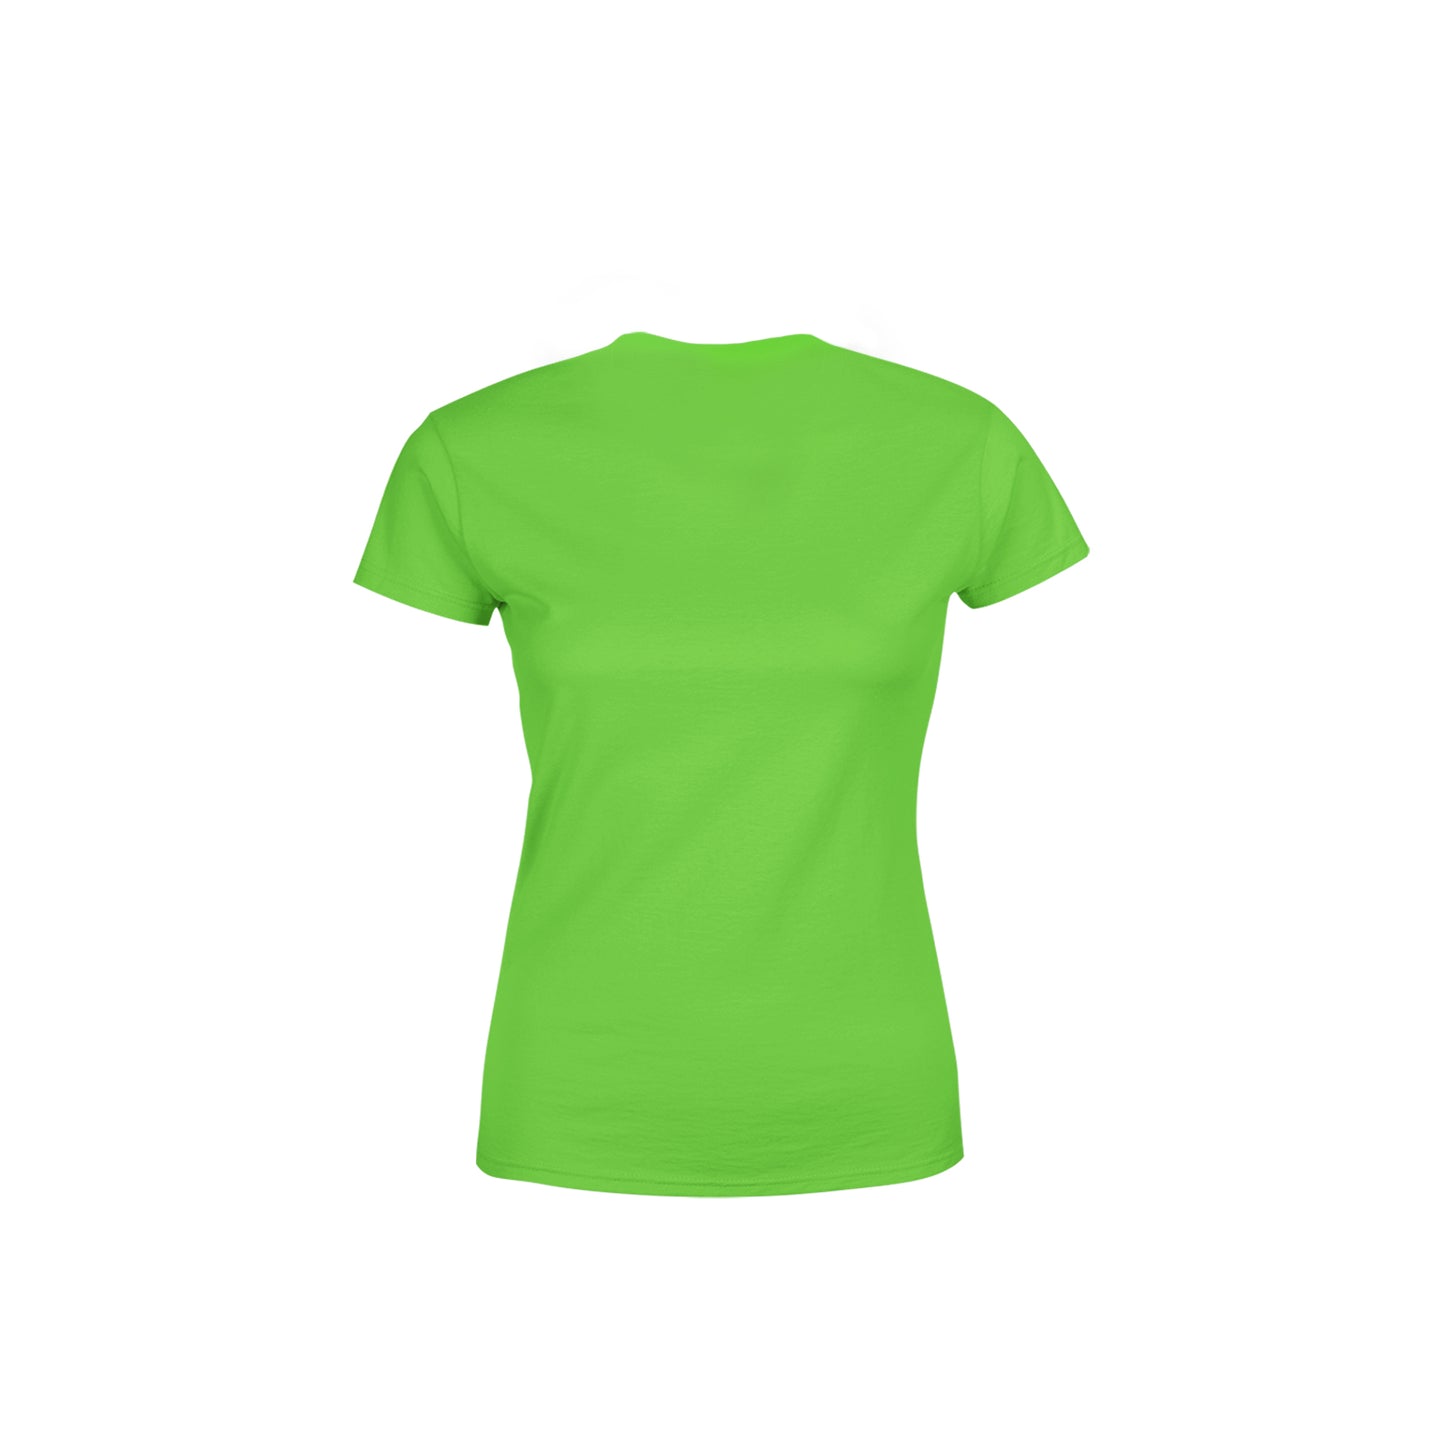 39 Number Women's T-Shirt (Liril Green)